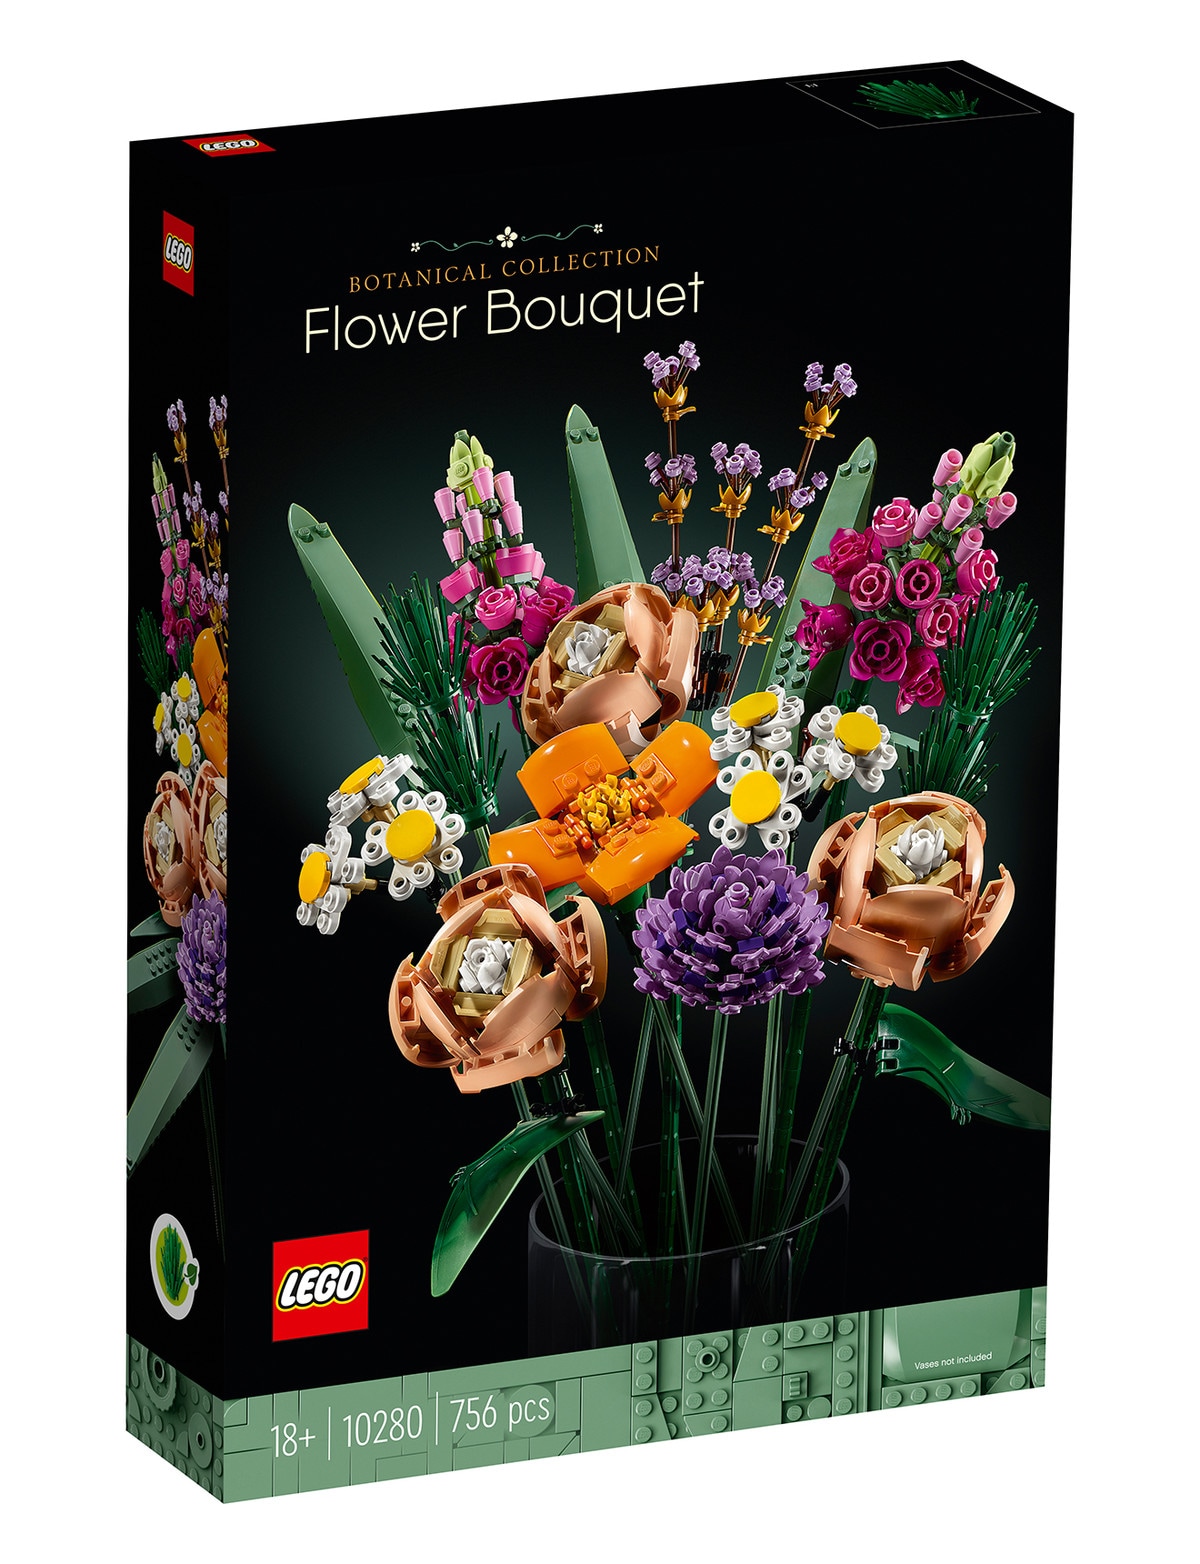 LEGO Creator Expert EXPERT Botanical Collection - Flower Bouquet